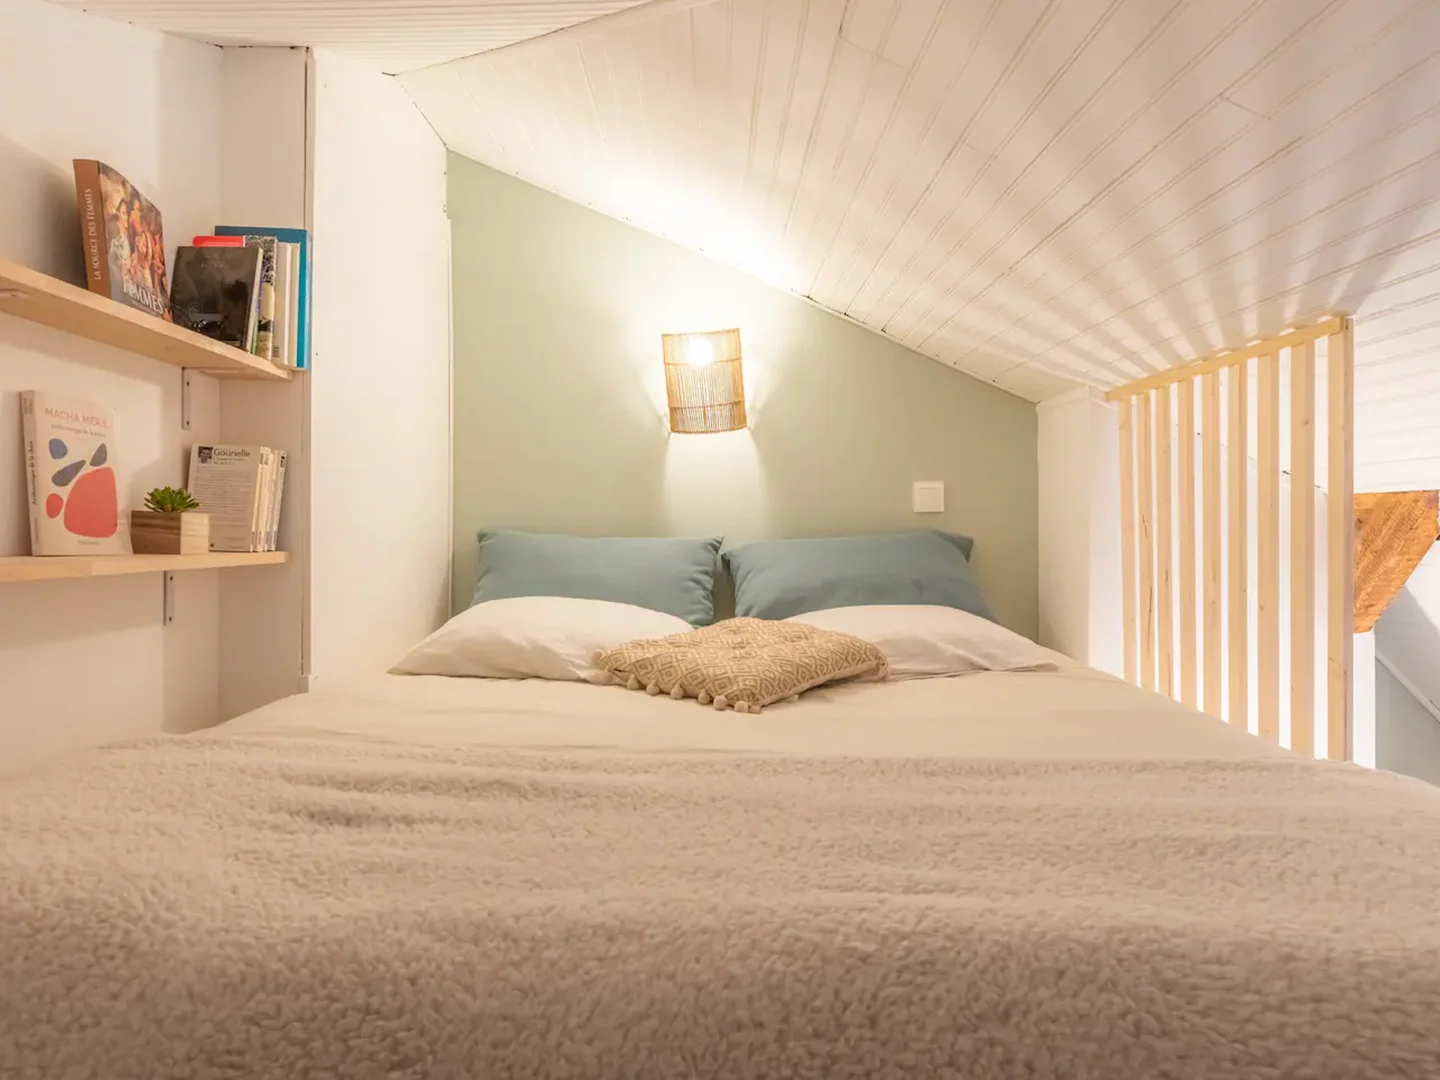 rennes-host-airbnb-conciergerie-l-ecrin-studio-mezzanine-proche-gare-nord-5